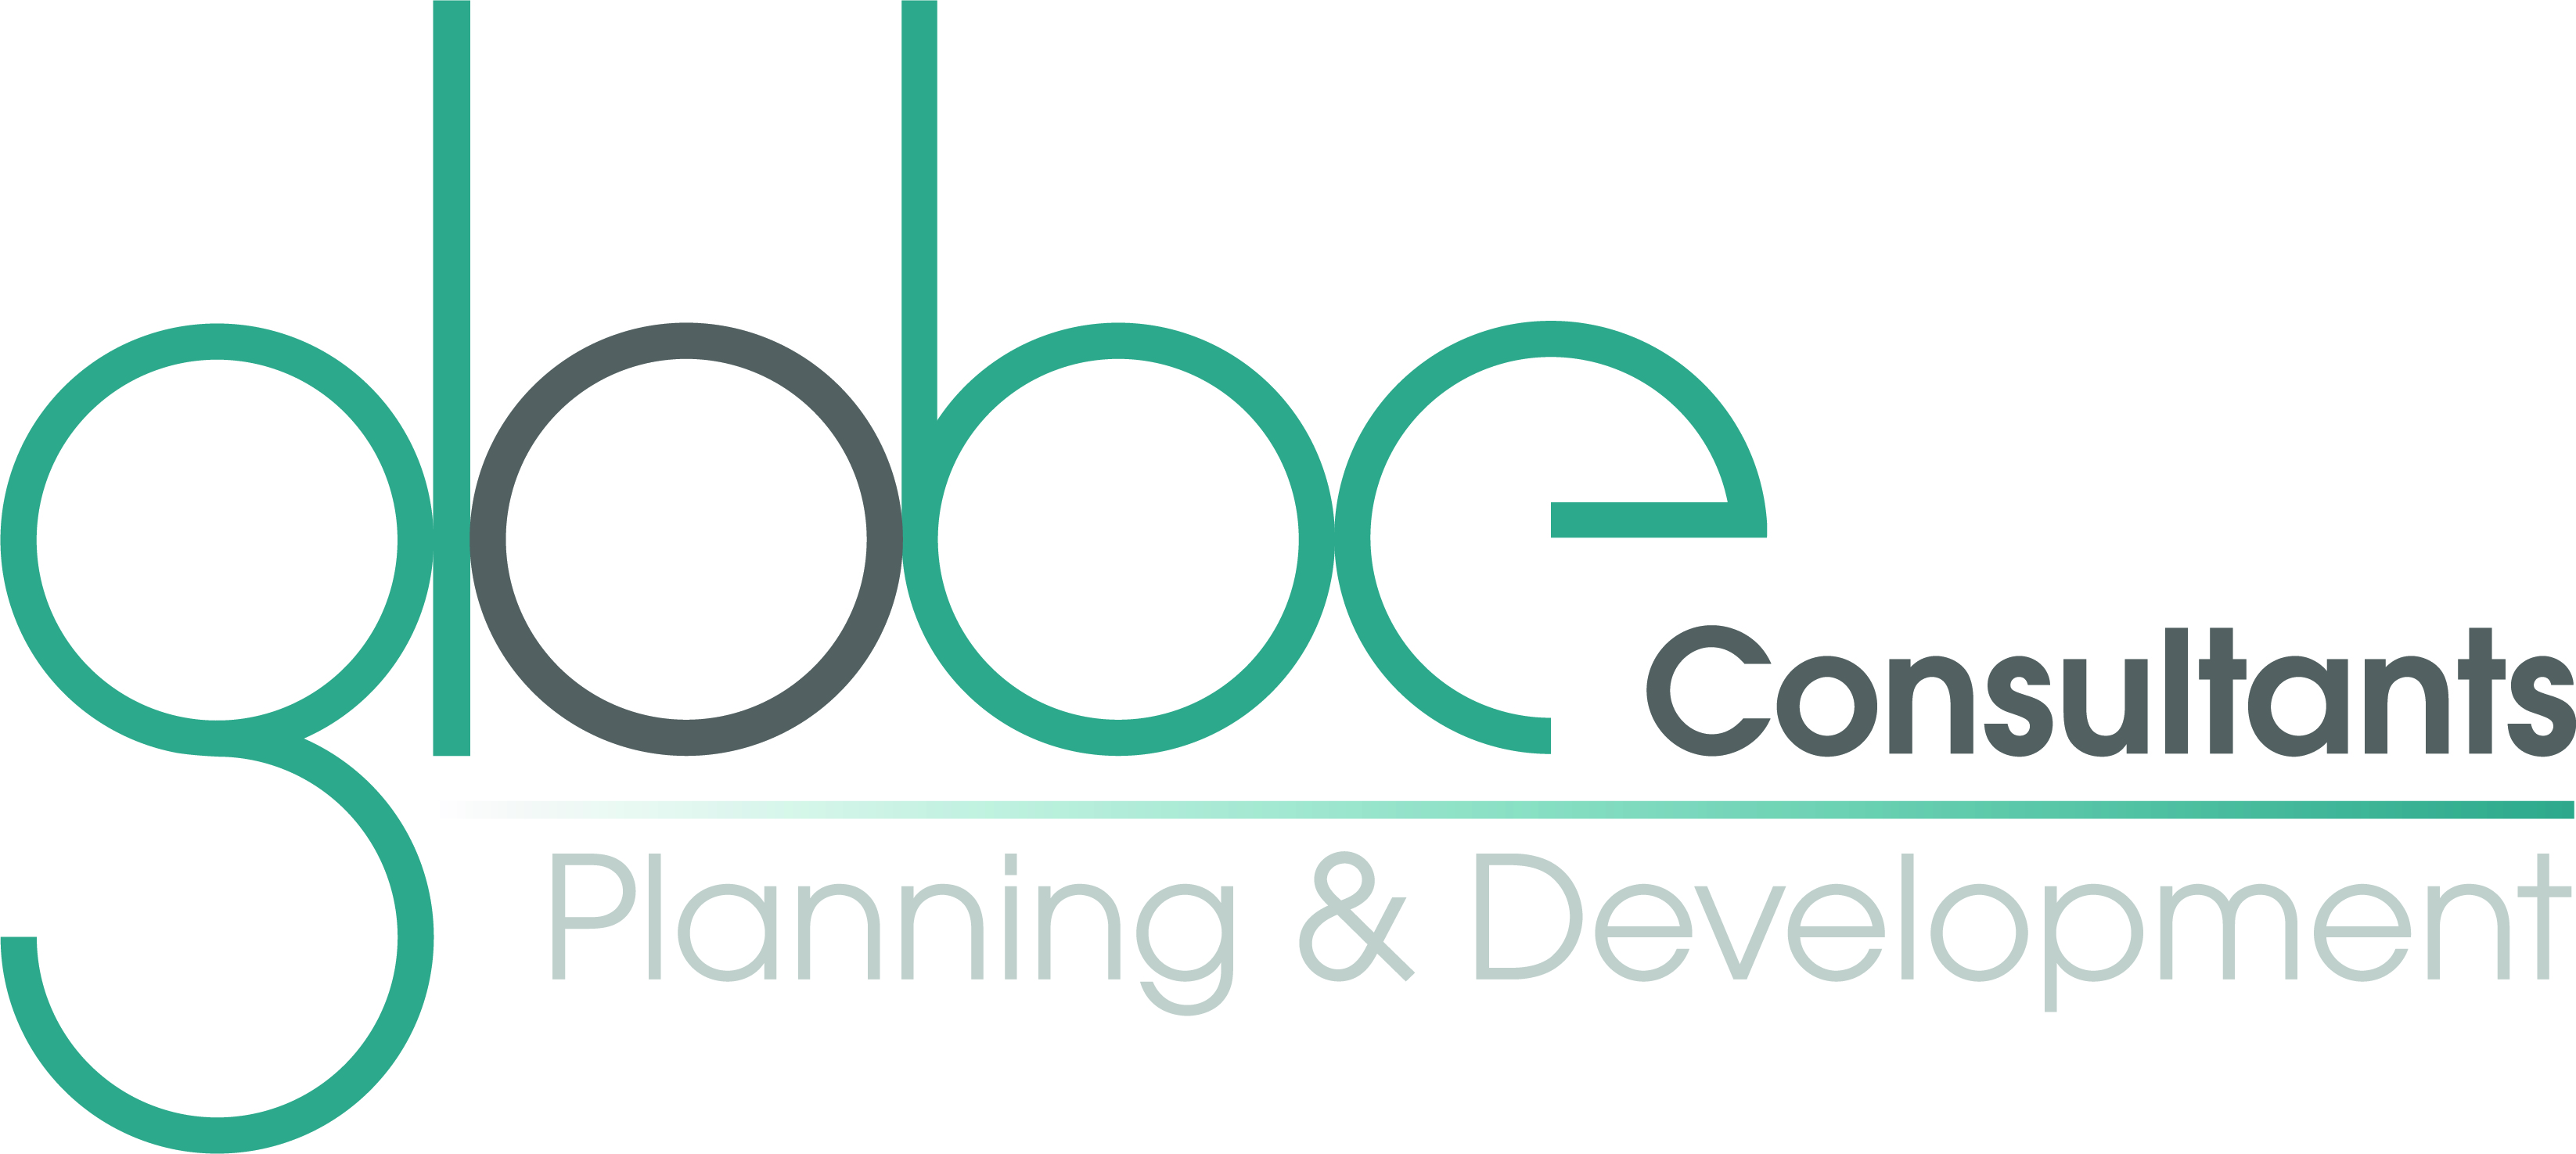 Globe Consultants Limited Company Logo